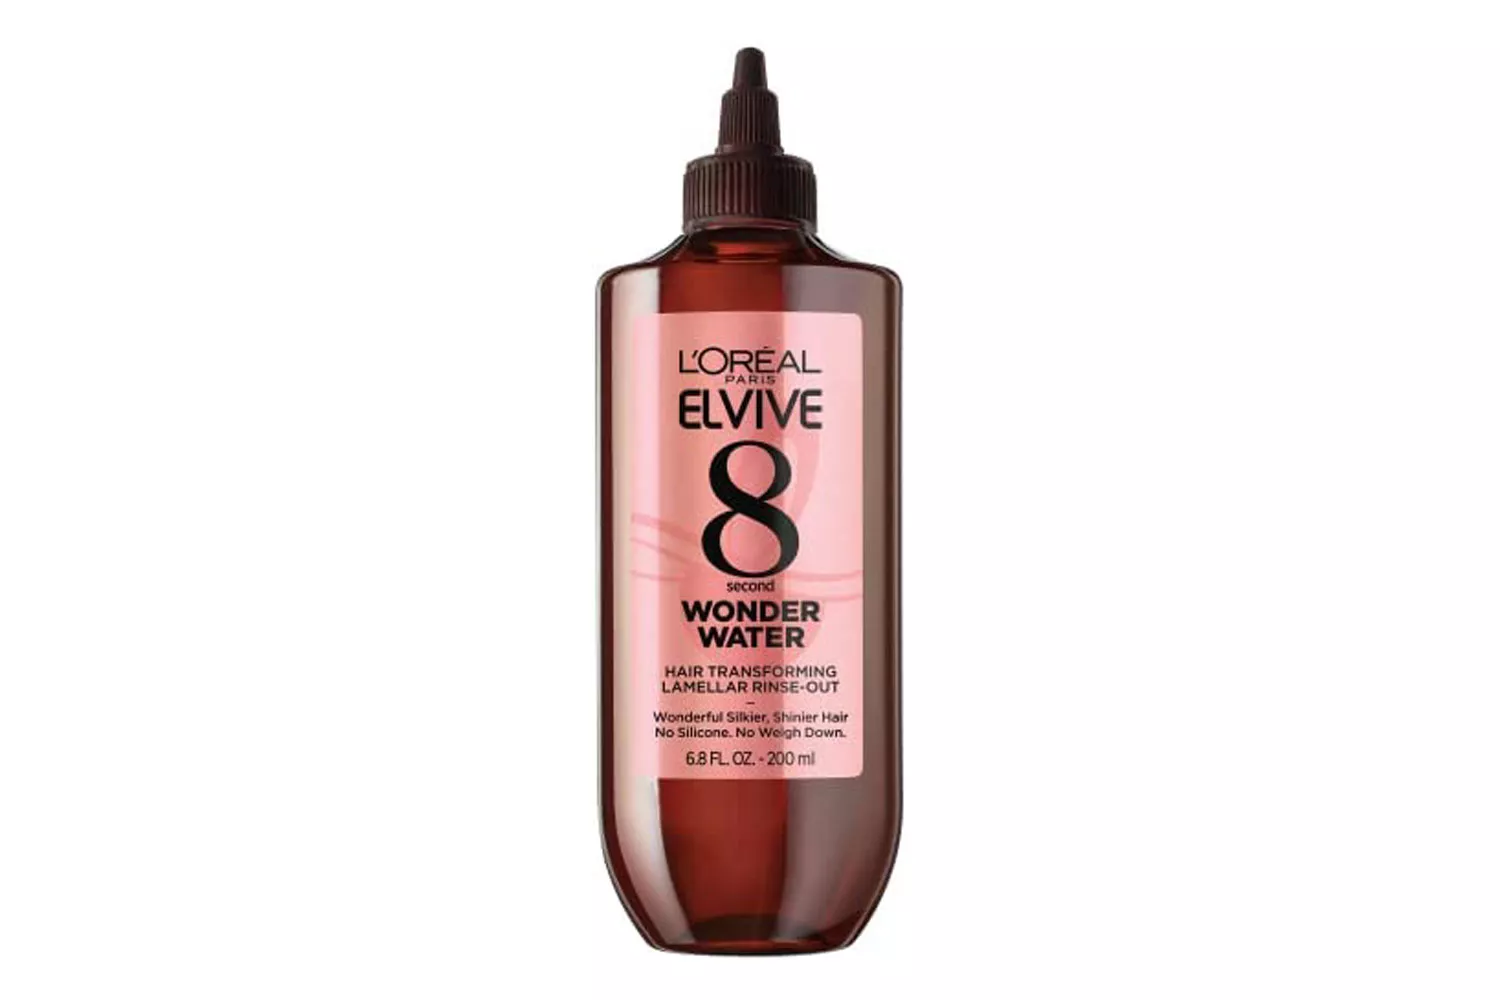 LâOreal Elvive 8 Second Wonder Water Lamellar Rinse Out Hair Treatment